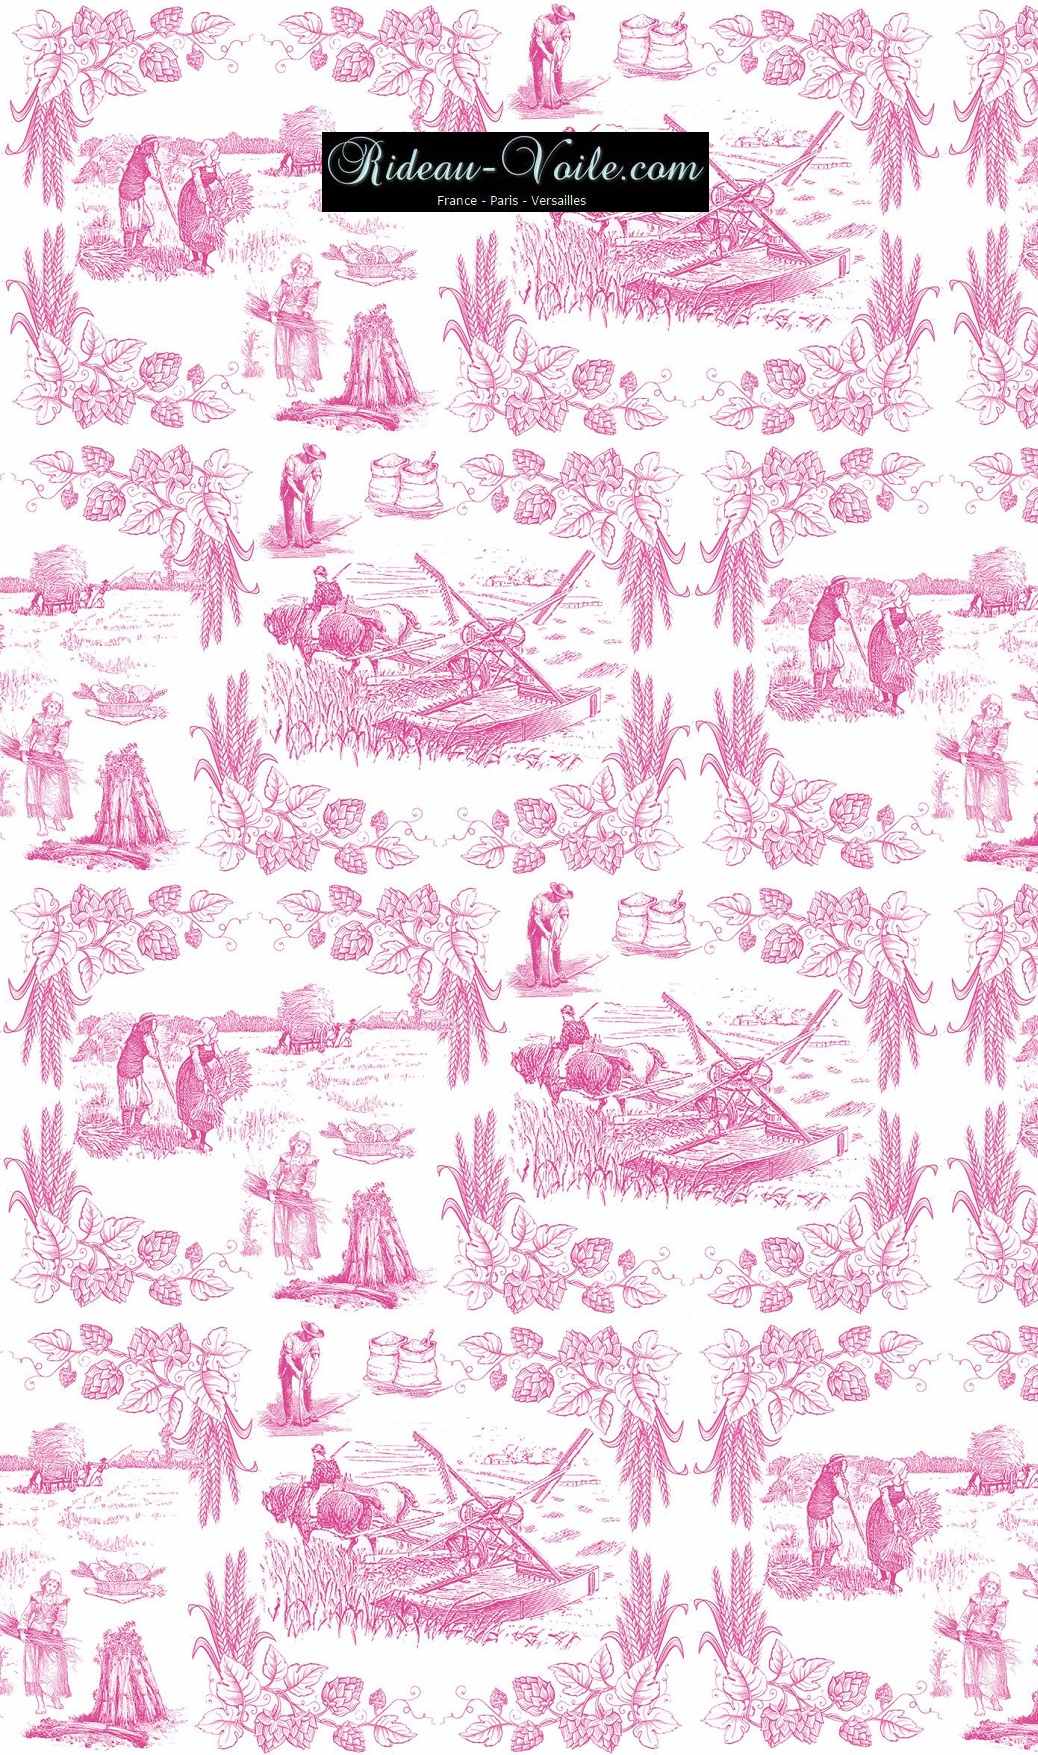 Toile de Jouy tissu au mètre ameublement textile Paris Versailles Yvelines decoration french pattern haut gamme rose pink